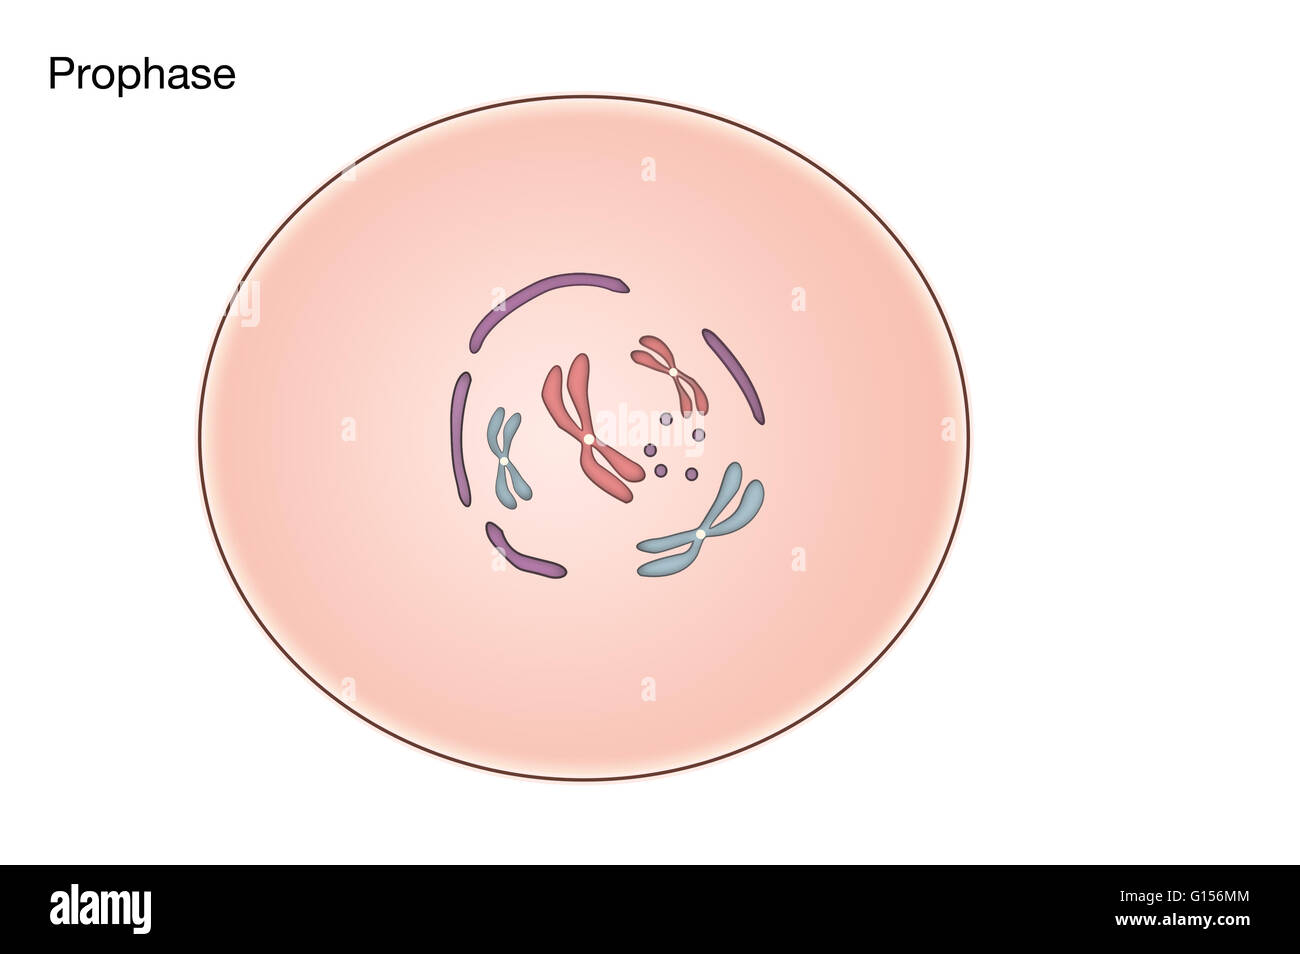 Diagramm der Prophase der Mitose in einer tierischen Zelle. Stockfoto